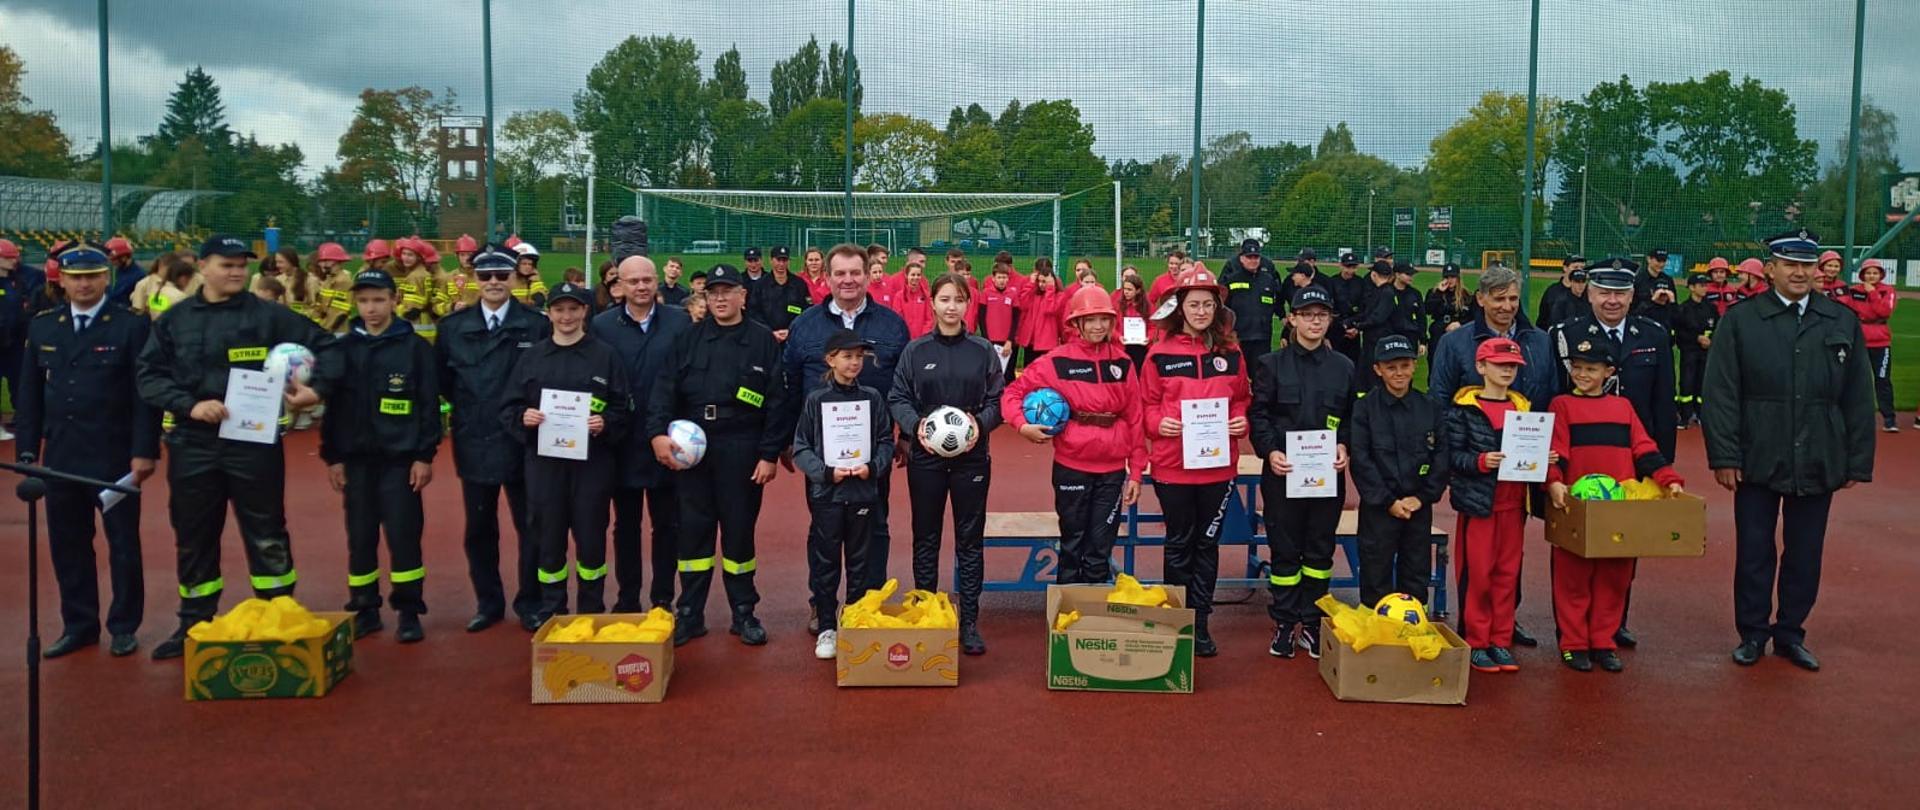 Powiatowe Zawody Sportowo Pożarnicze Młodzieżowych Drużyn Pożarniczych OSP 2022 - - na zdjęciu druhowie OSP w stoją szeregu z dyplomami w rękach z strażakami w mundurach wyjściowych podczas zbiórki na tartanie na boisku